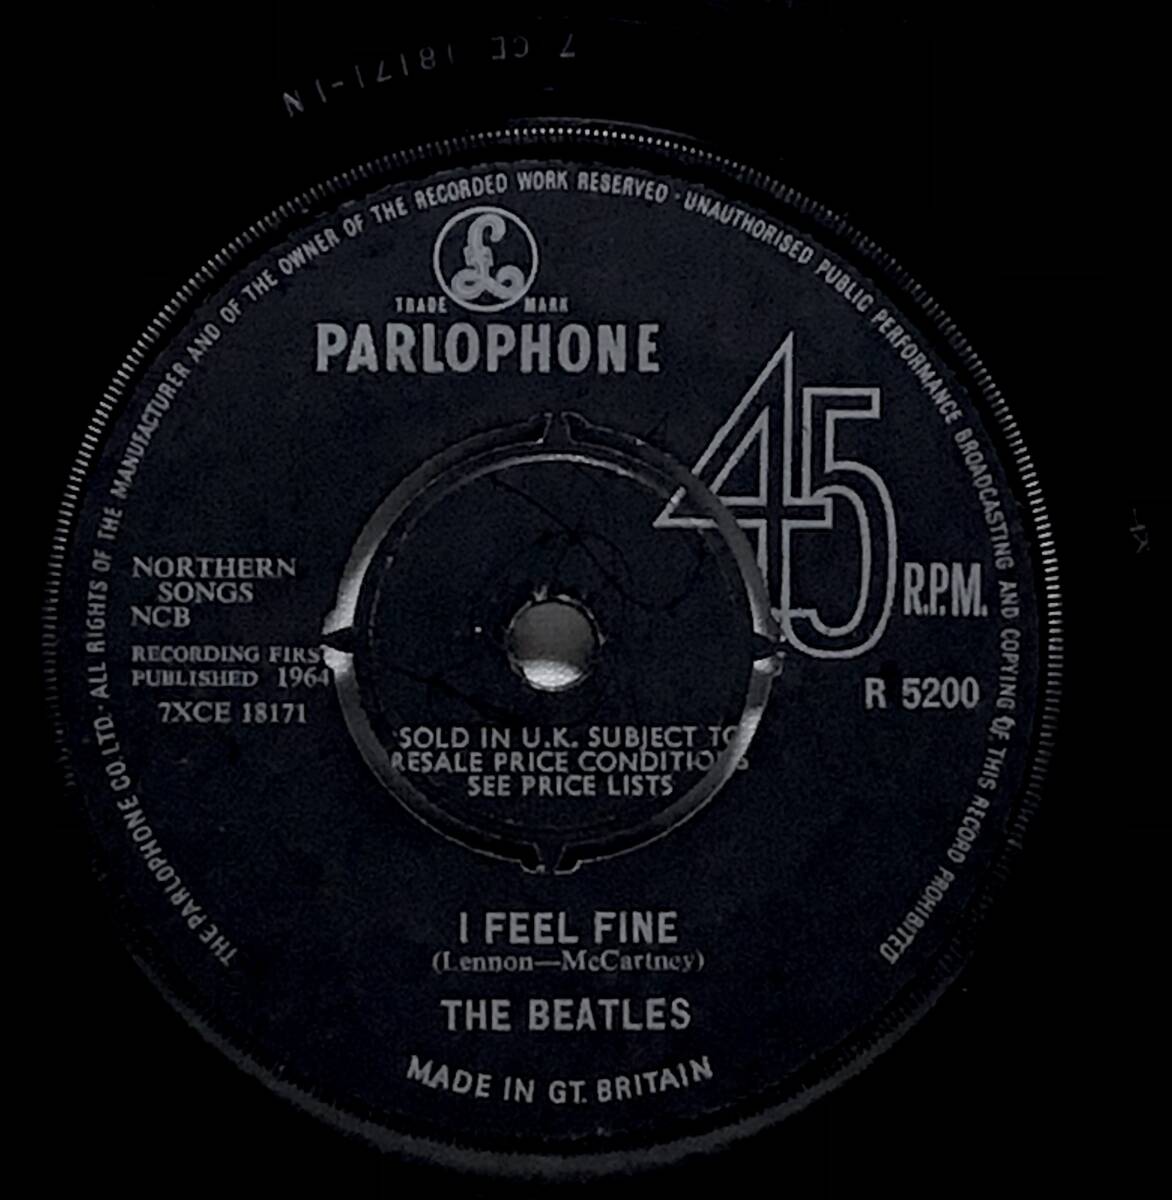 【英7】 THE BEATLES ビートルズ I FEEL FINE / SHE'S A WOMAN / 1964 MONO UK盤 PARLOPHONE 7インチレコード EP 45 1N RG / 1N O 試聴済_画像4